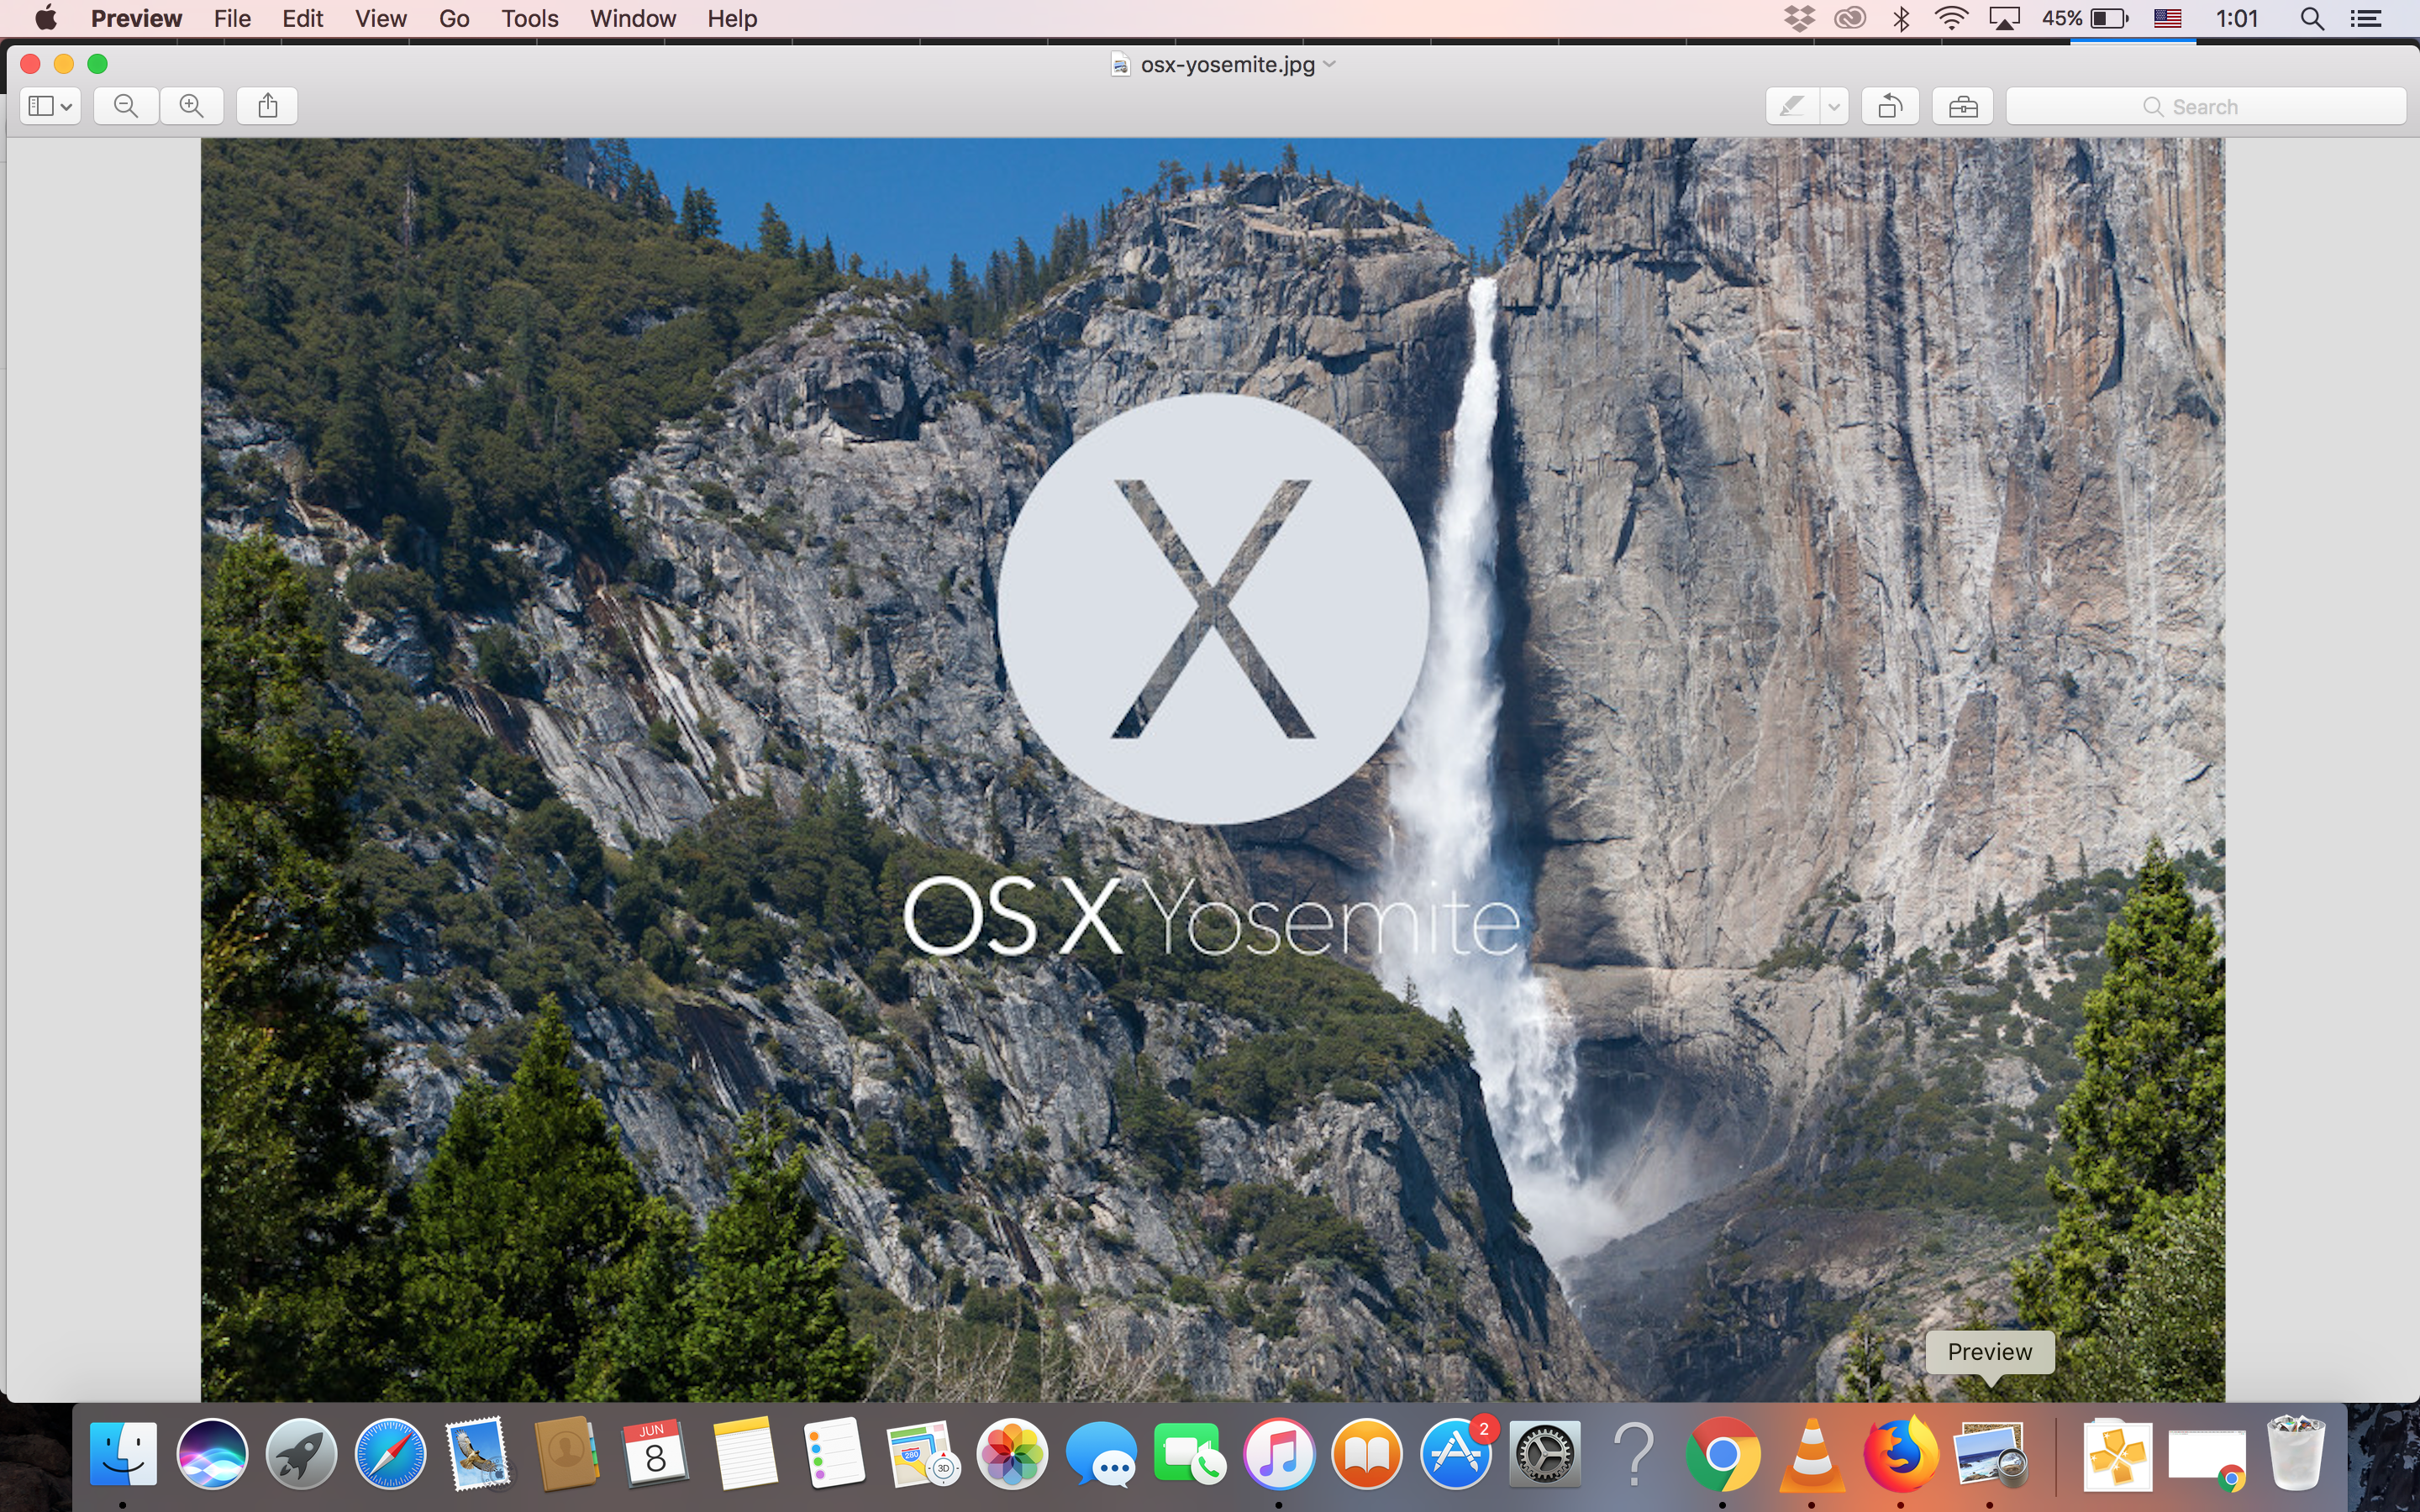 Download Mac Os X Yosemite 10.10 For Free